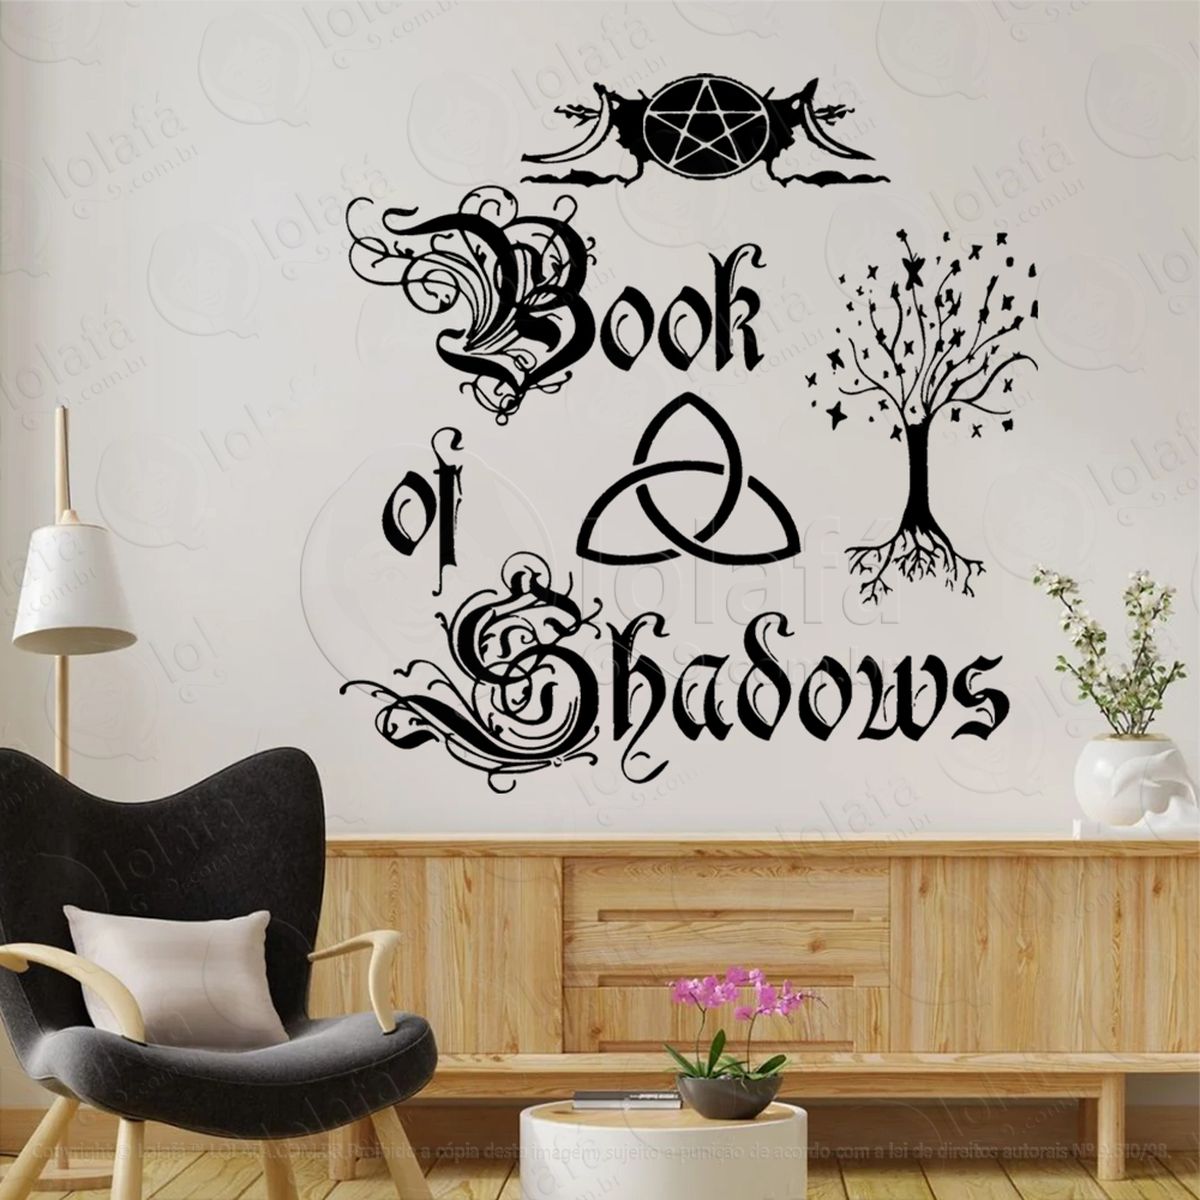 book of shadows livro das sombras adesivo de parede decorativo para casa, sala, quarto, vidro e altar ocultista - mod:153